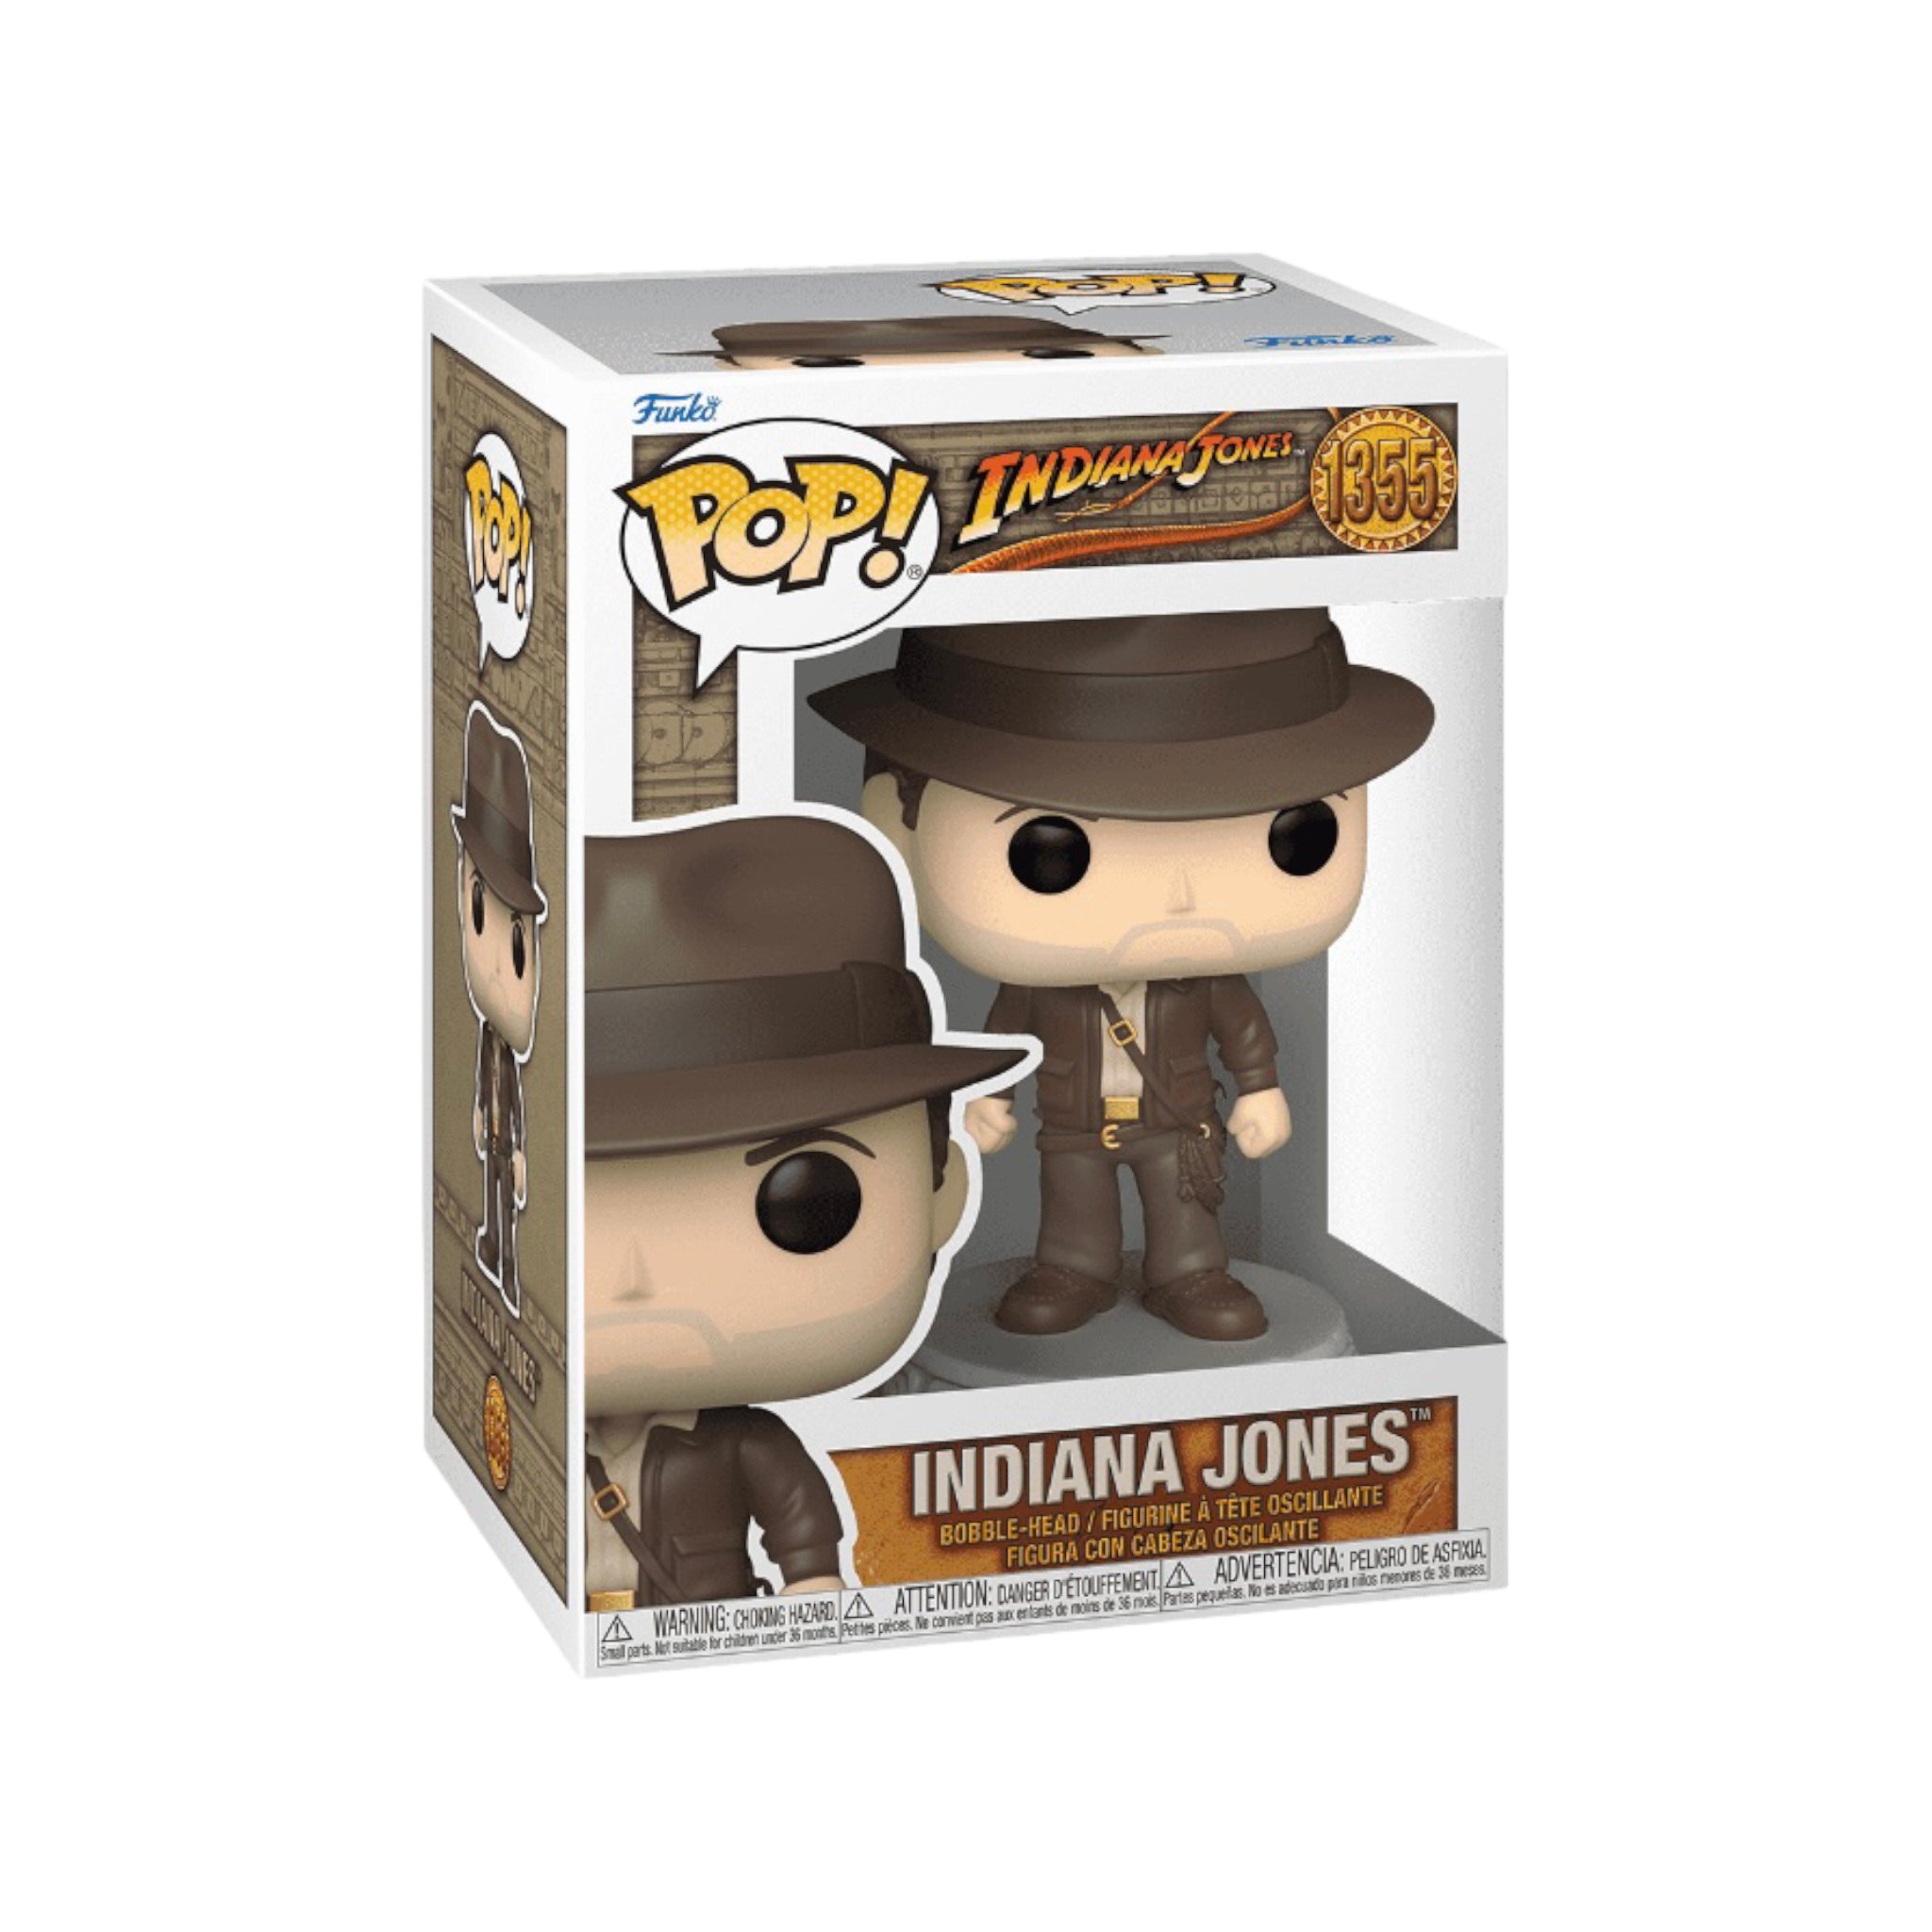 Indiana Jones #1355 Funko Pop! - Indiana Jones